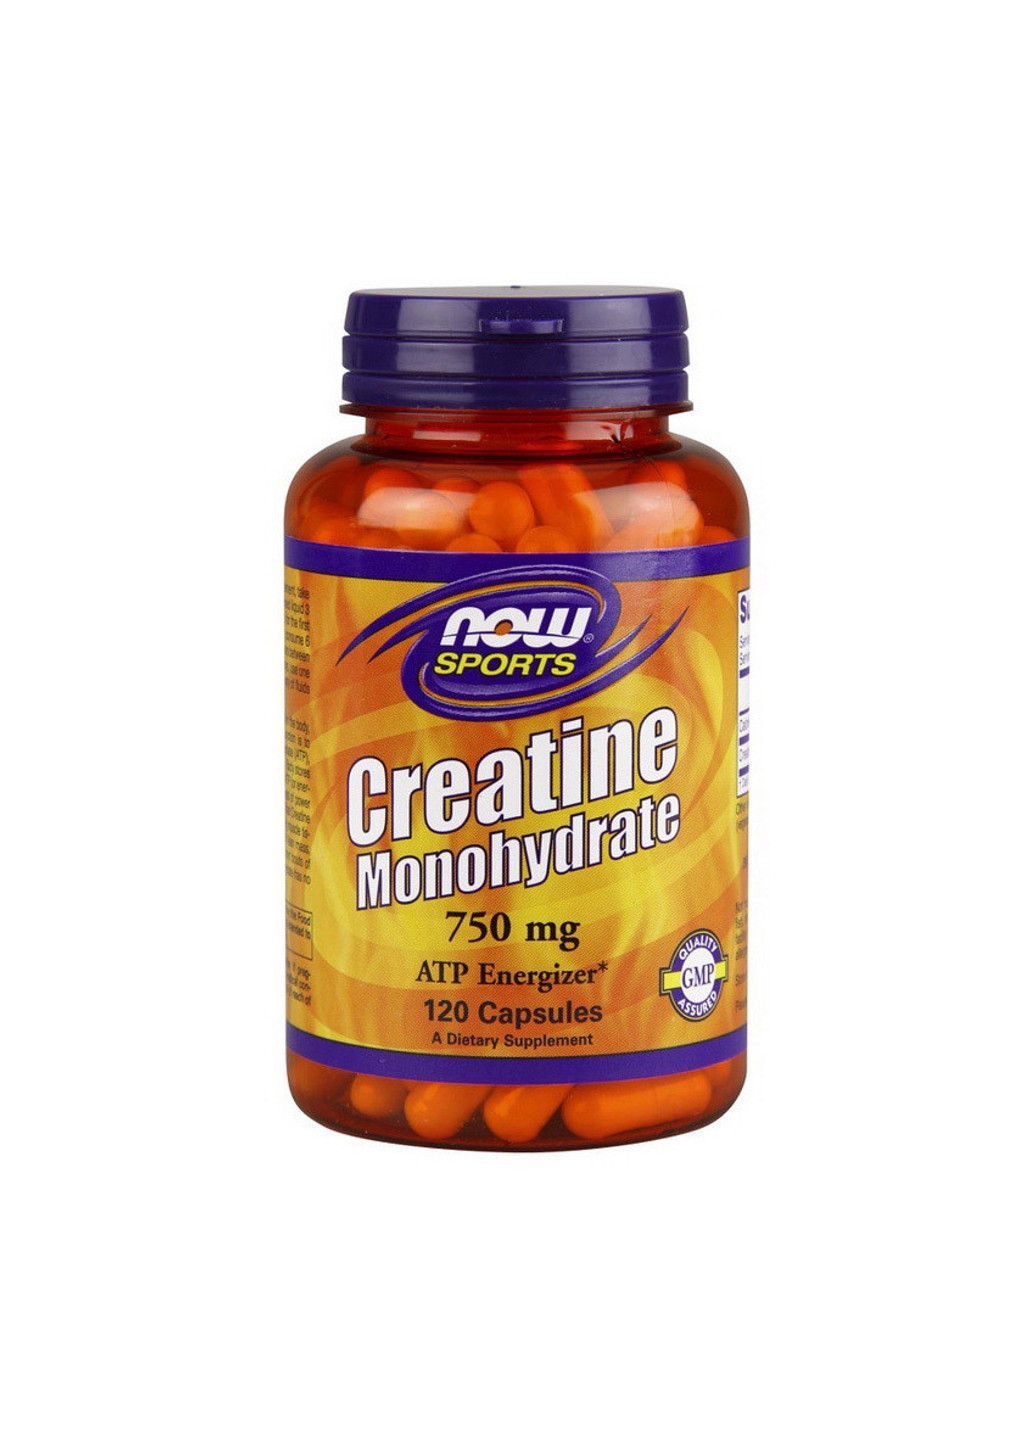 Креатин моногидрат Creatine Monohydrate 750 mg (120 капс) нау фудс Now Foods (255279530)